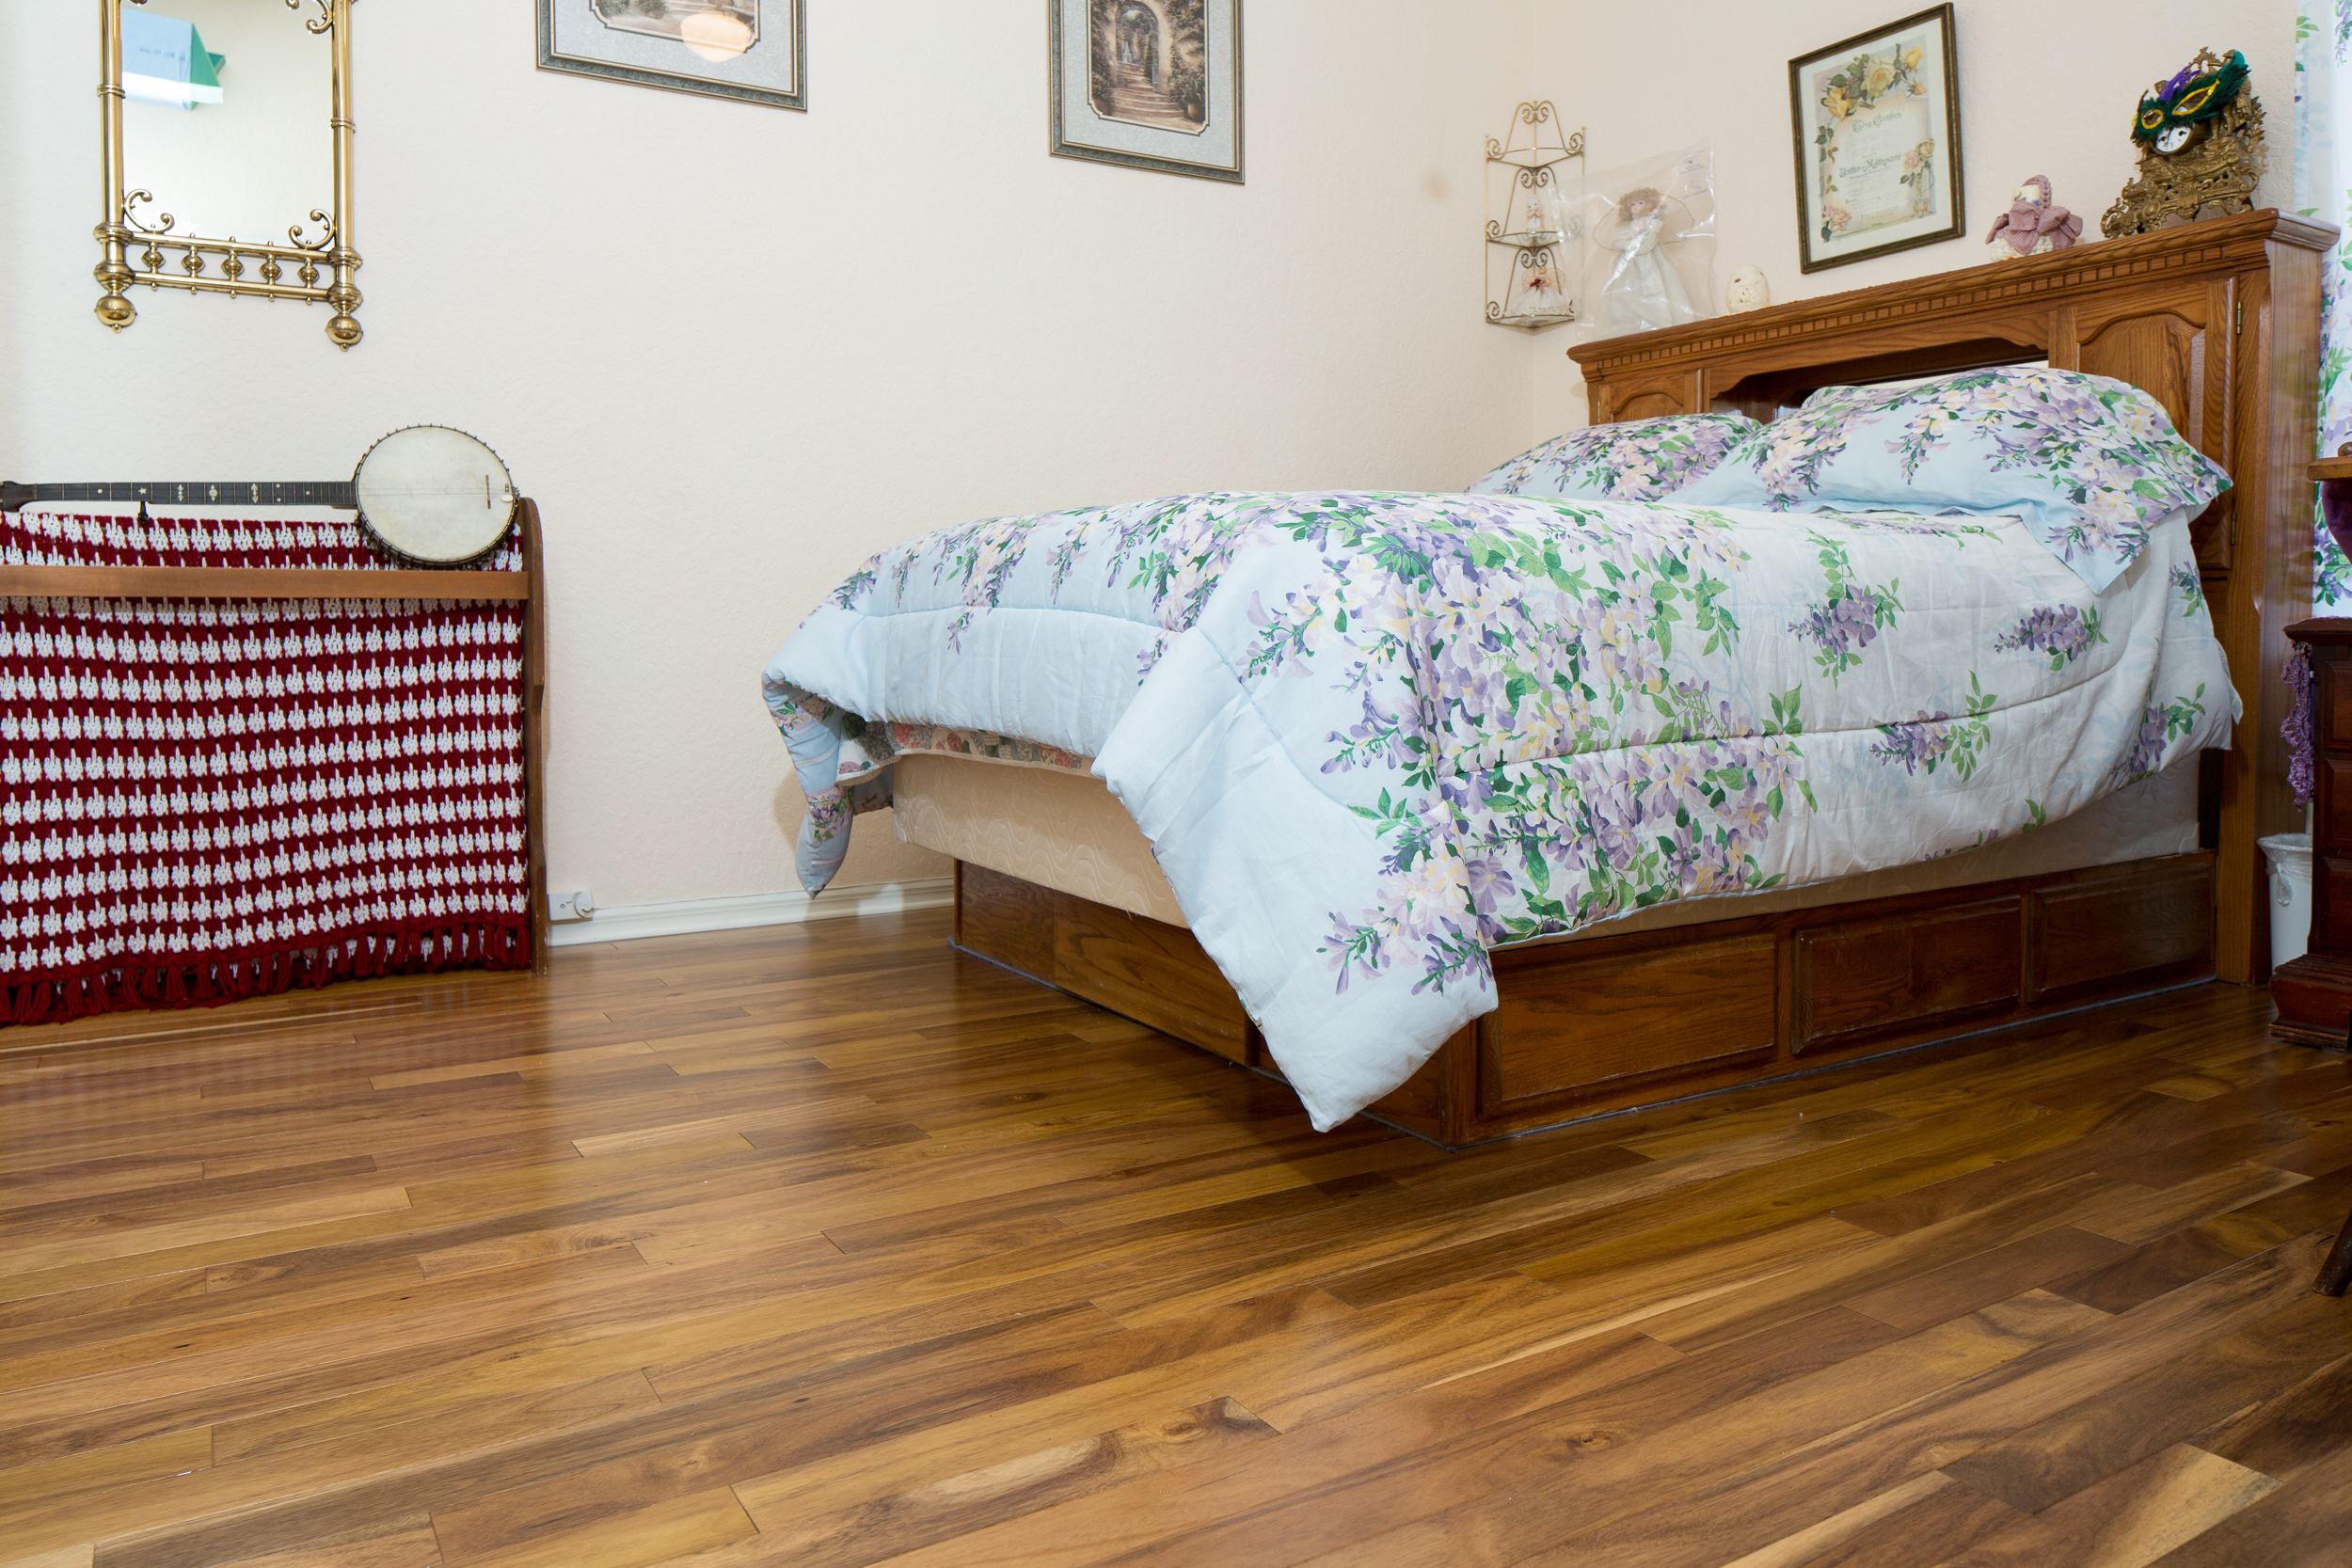 Acacia wood floors in bedroom